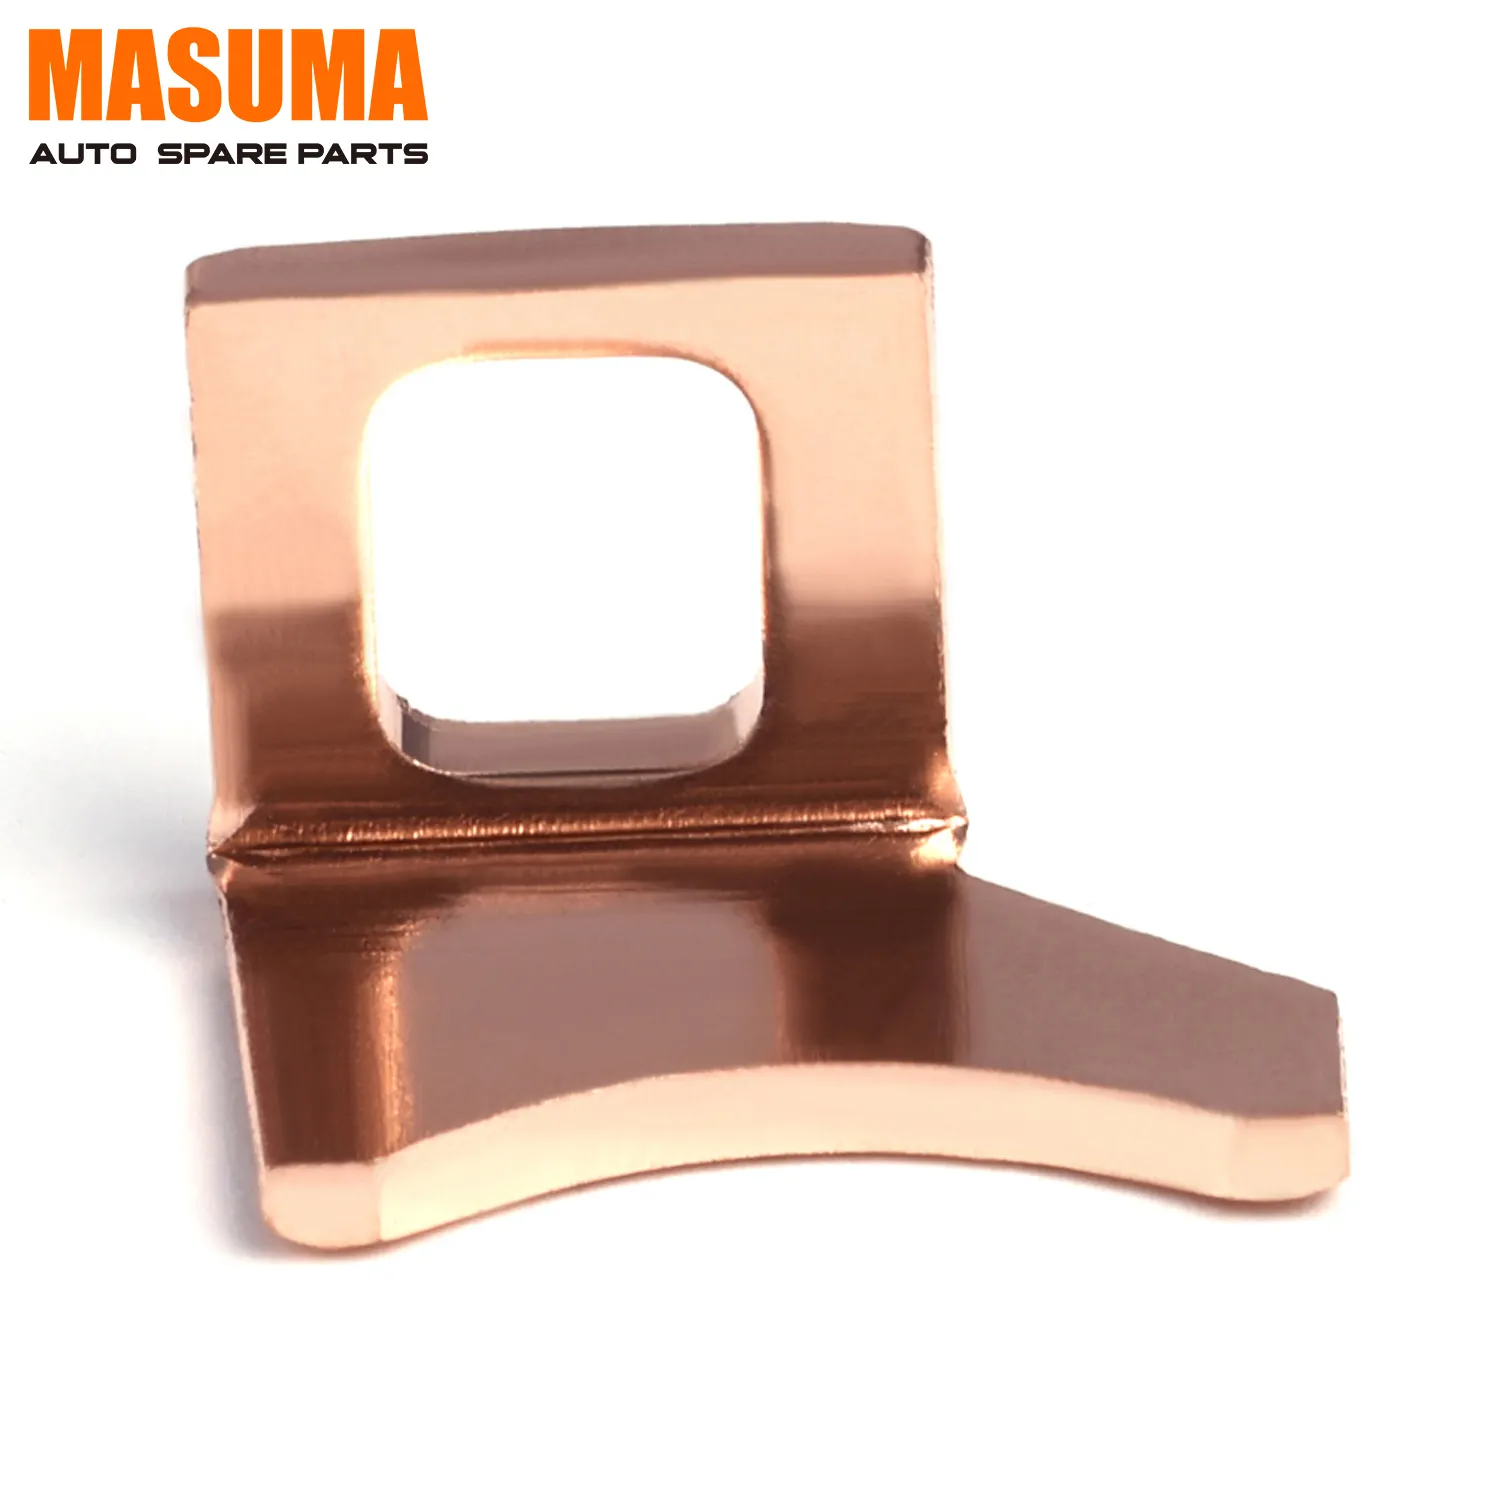 MY-022 MASUMA 10PCS Klemmen für automatische Ersatzteil anschlüsse